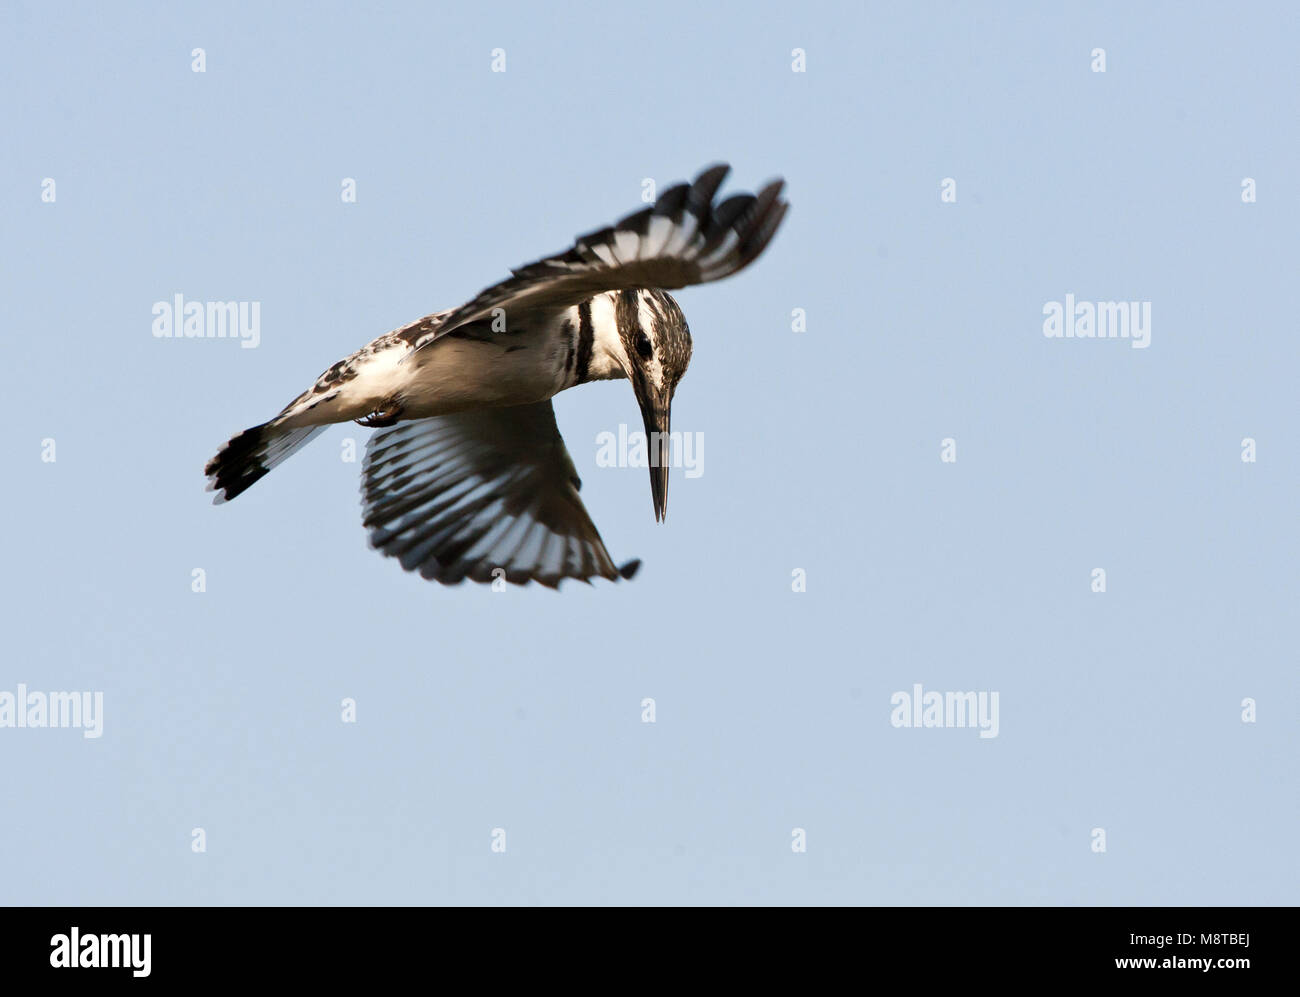 Bonte IJsvogel biddend boven op zoek naar voedsel agua, Pied Kingfisher flotando encima de una piscina en la búsqueda de alimentos Foto de stock